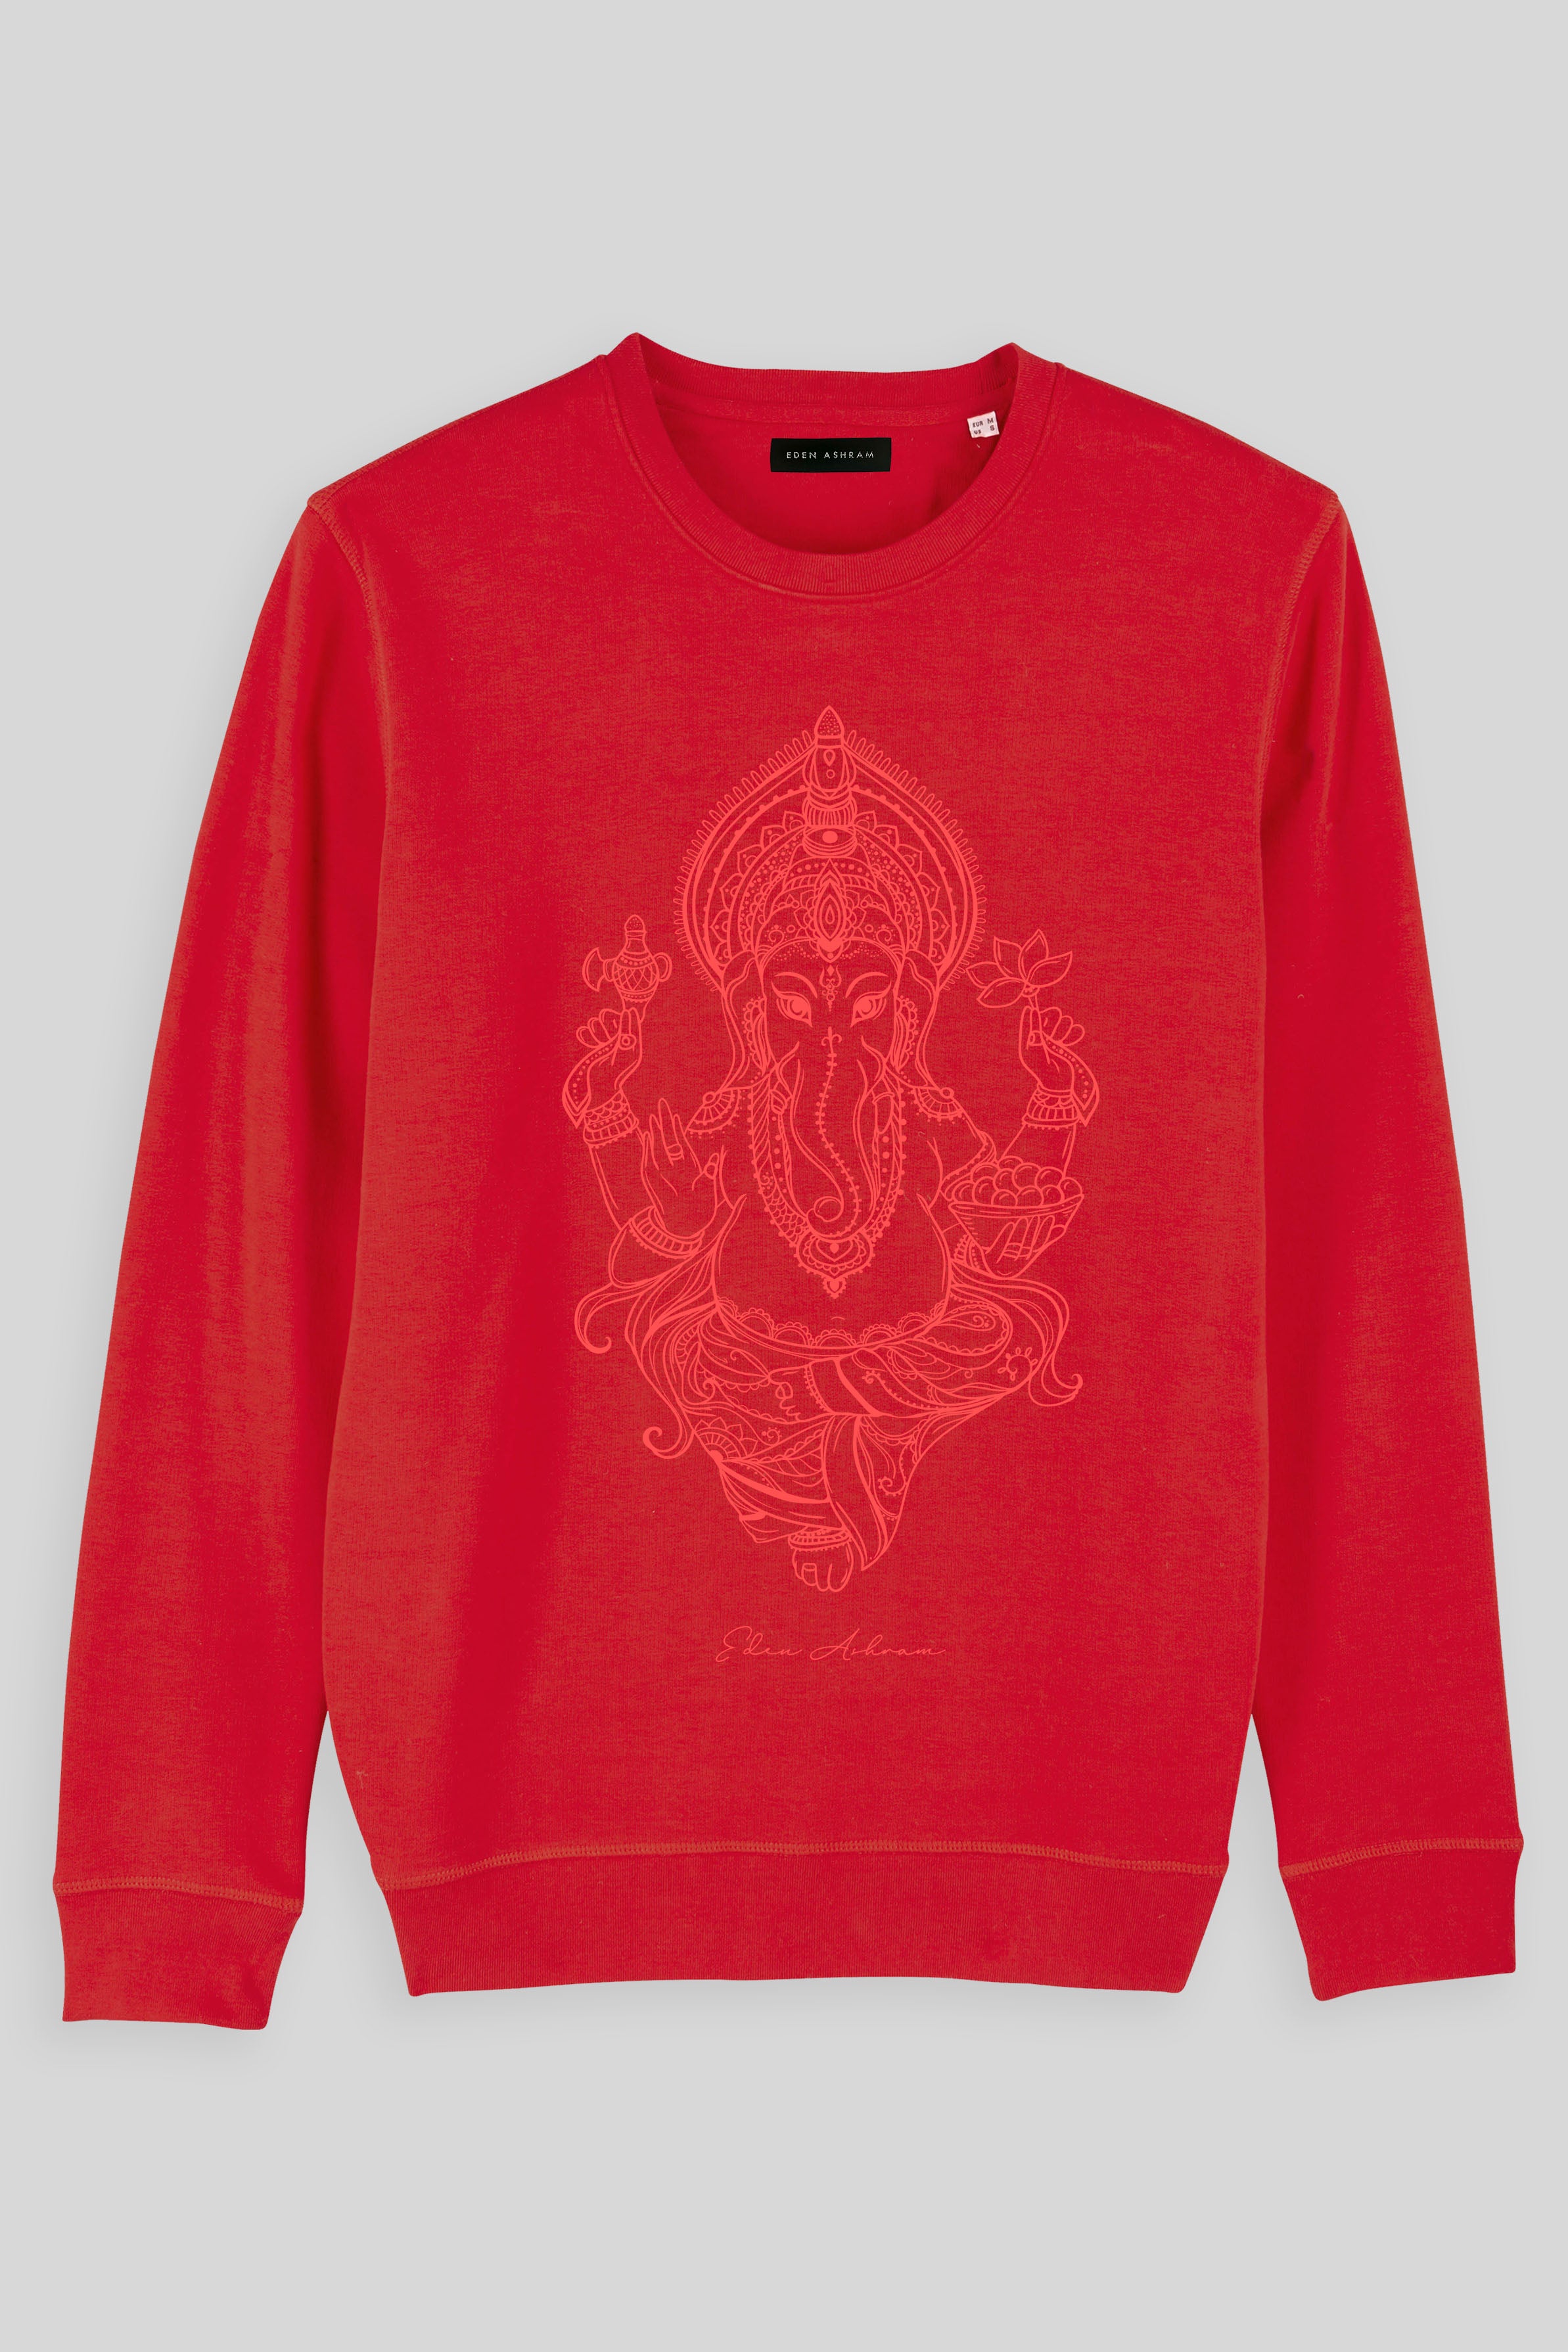 Eden Ashram Ganesha Premium Crew Neck Sweatshirt Red